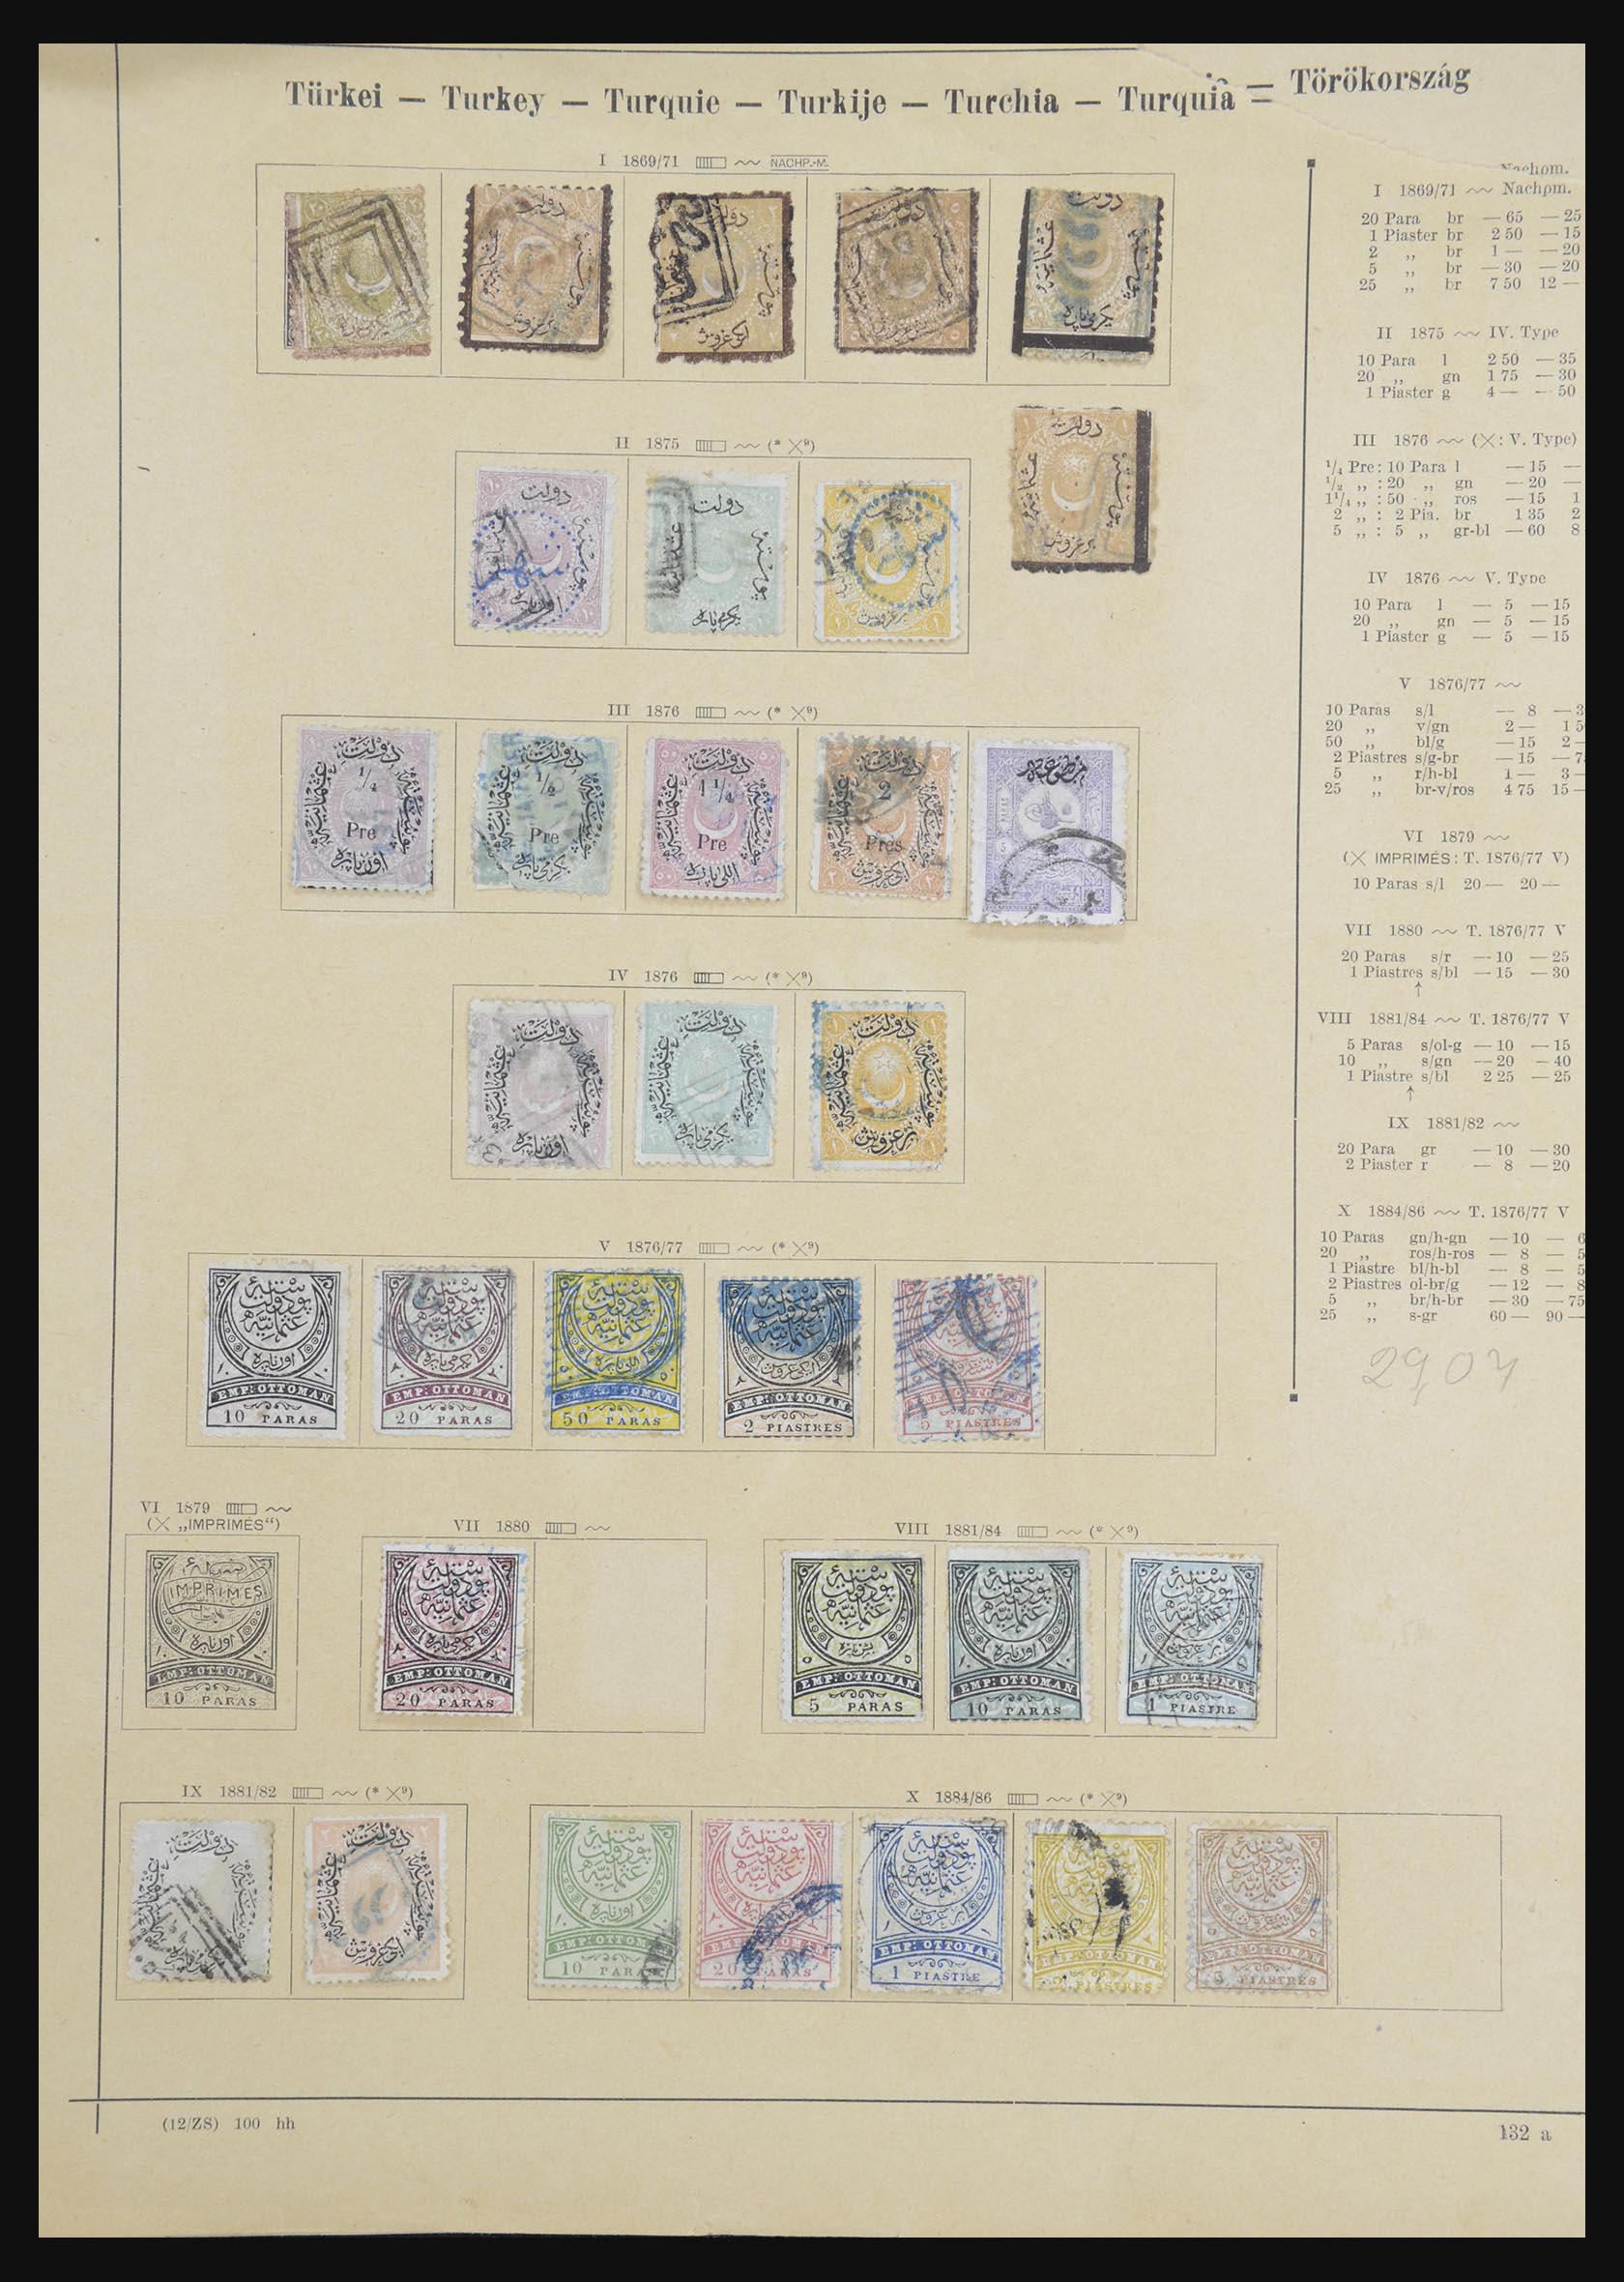 32232 125 - 32232 Turkije 1863-1965.